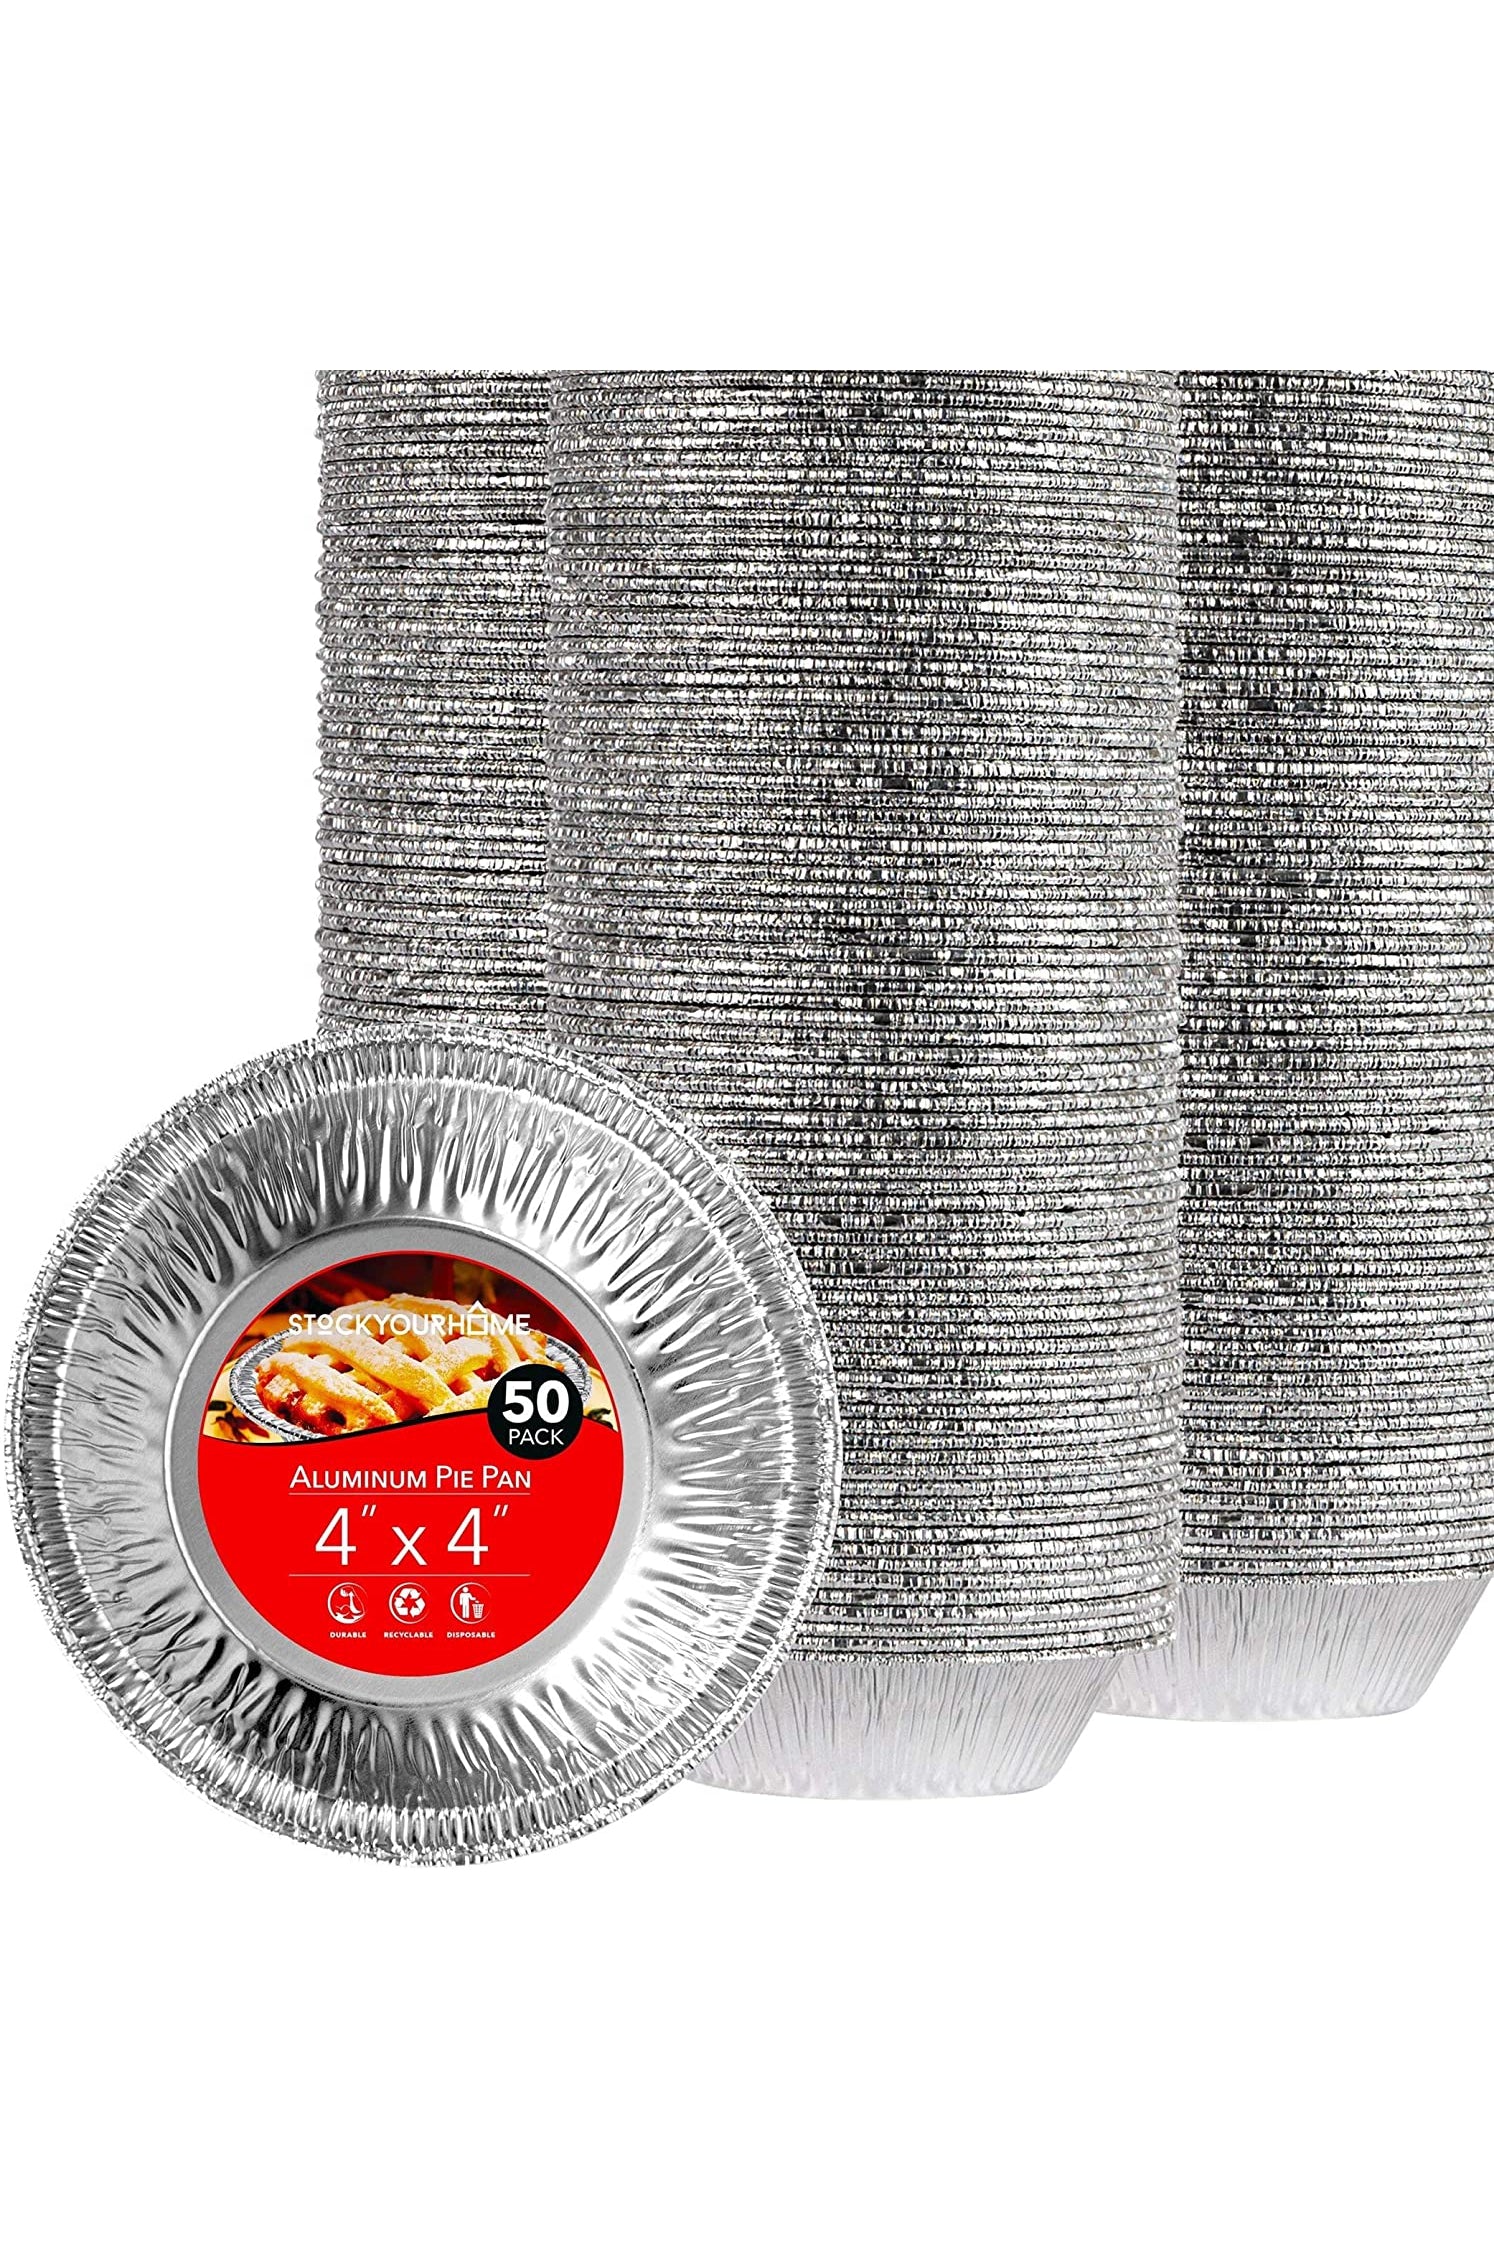 5 Inch Aluminum Foil Mini Pie Pans - Disposable Small Pie Tins For